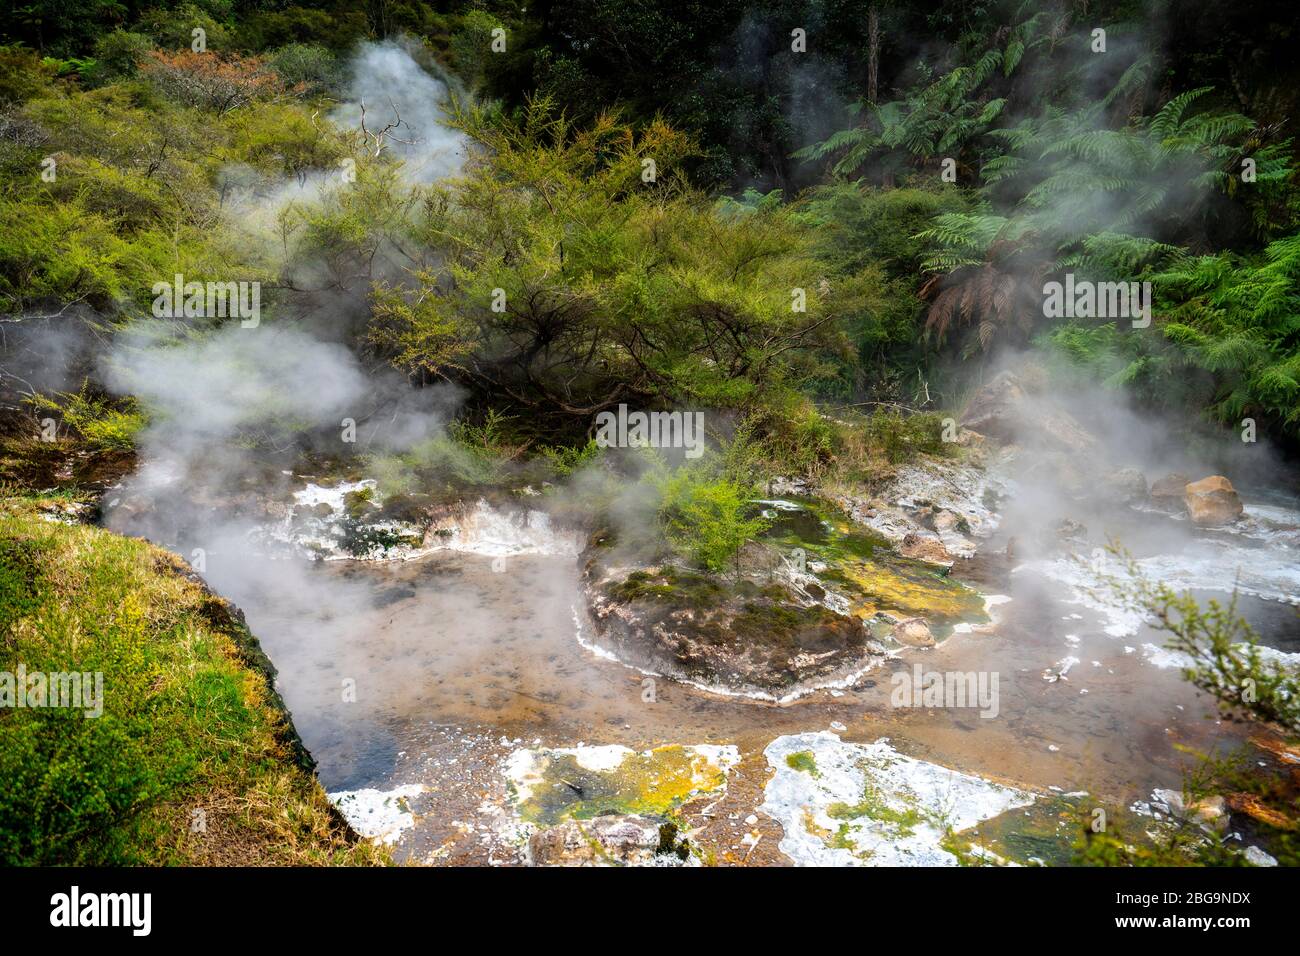 La vallée volcanique de Waimangu, Rotorua, île du Nord, Nouvelle-Zélande Banque D'Images